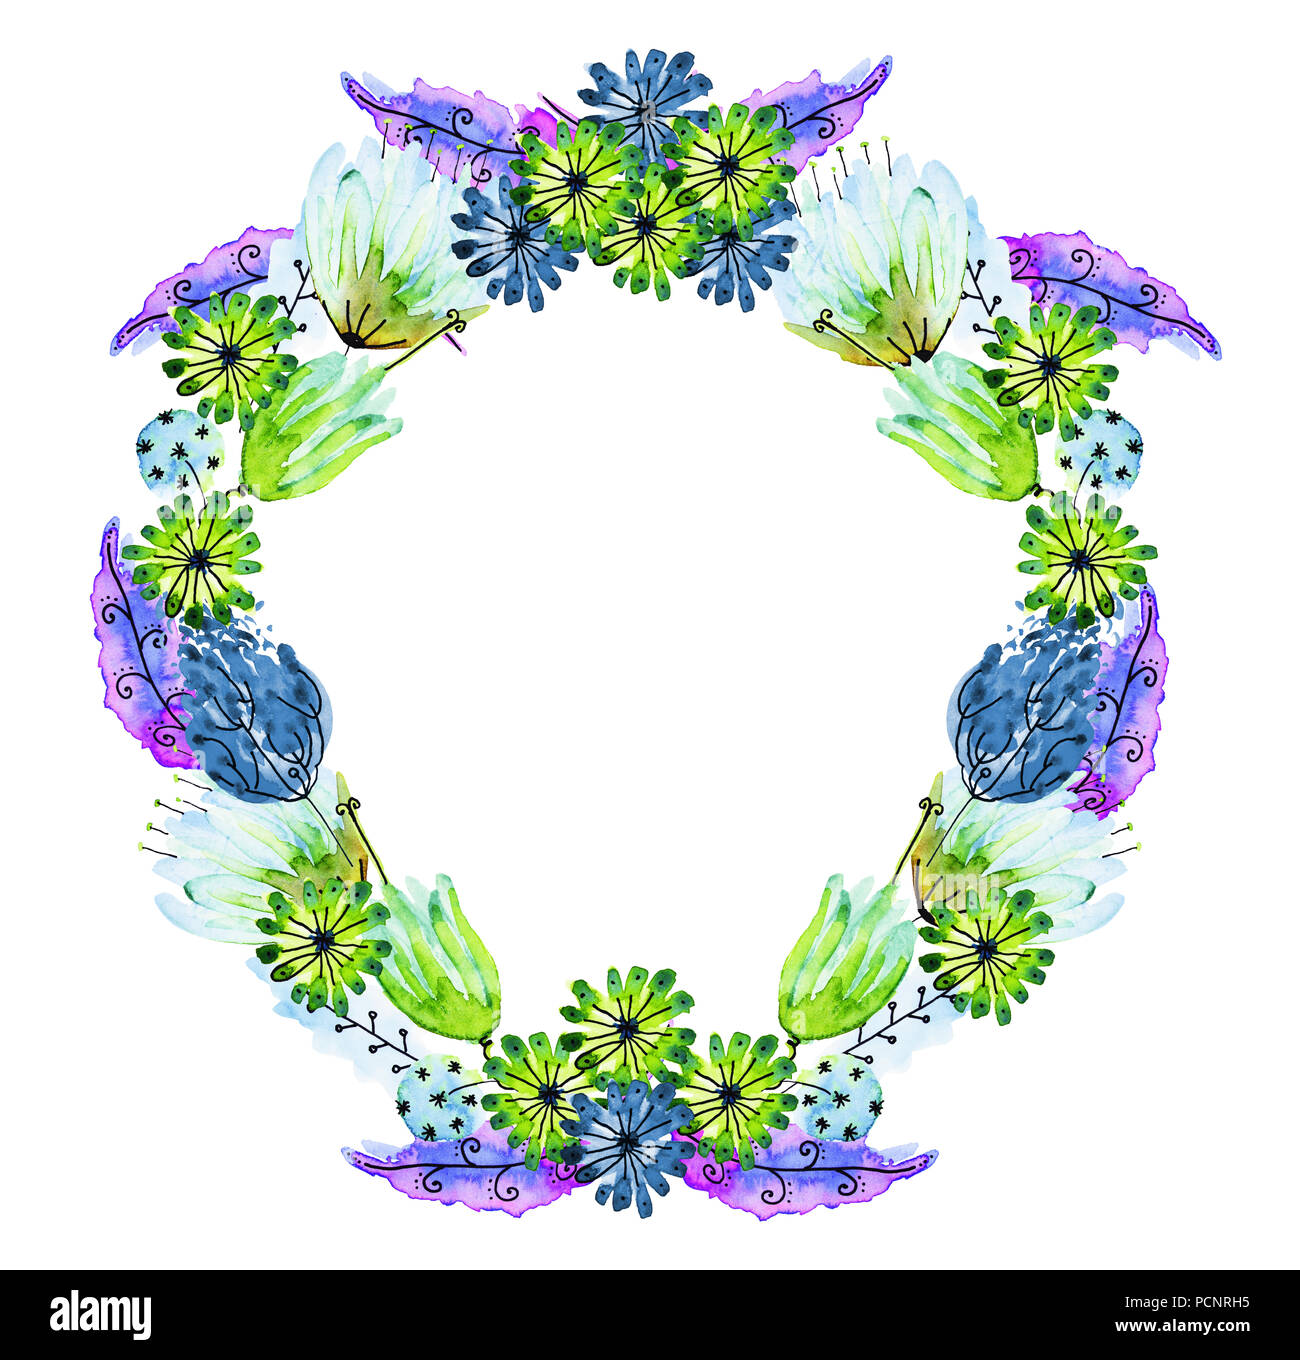 Aquarelle et encre illustration de guirlande. Fleur multicolore garland en bleu, vert, turquoise, rose de nuances. La couronne de mariage. Boho, thème romantique Banque D'Images